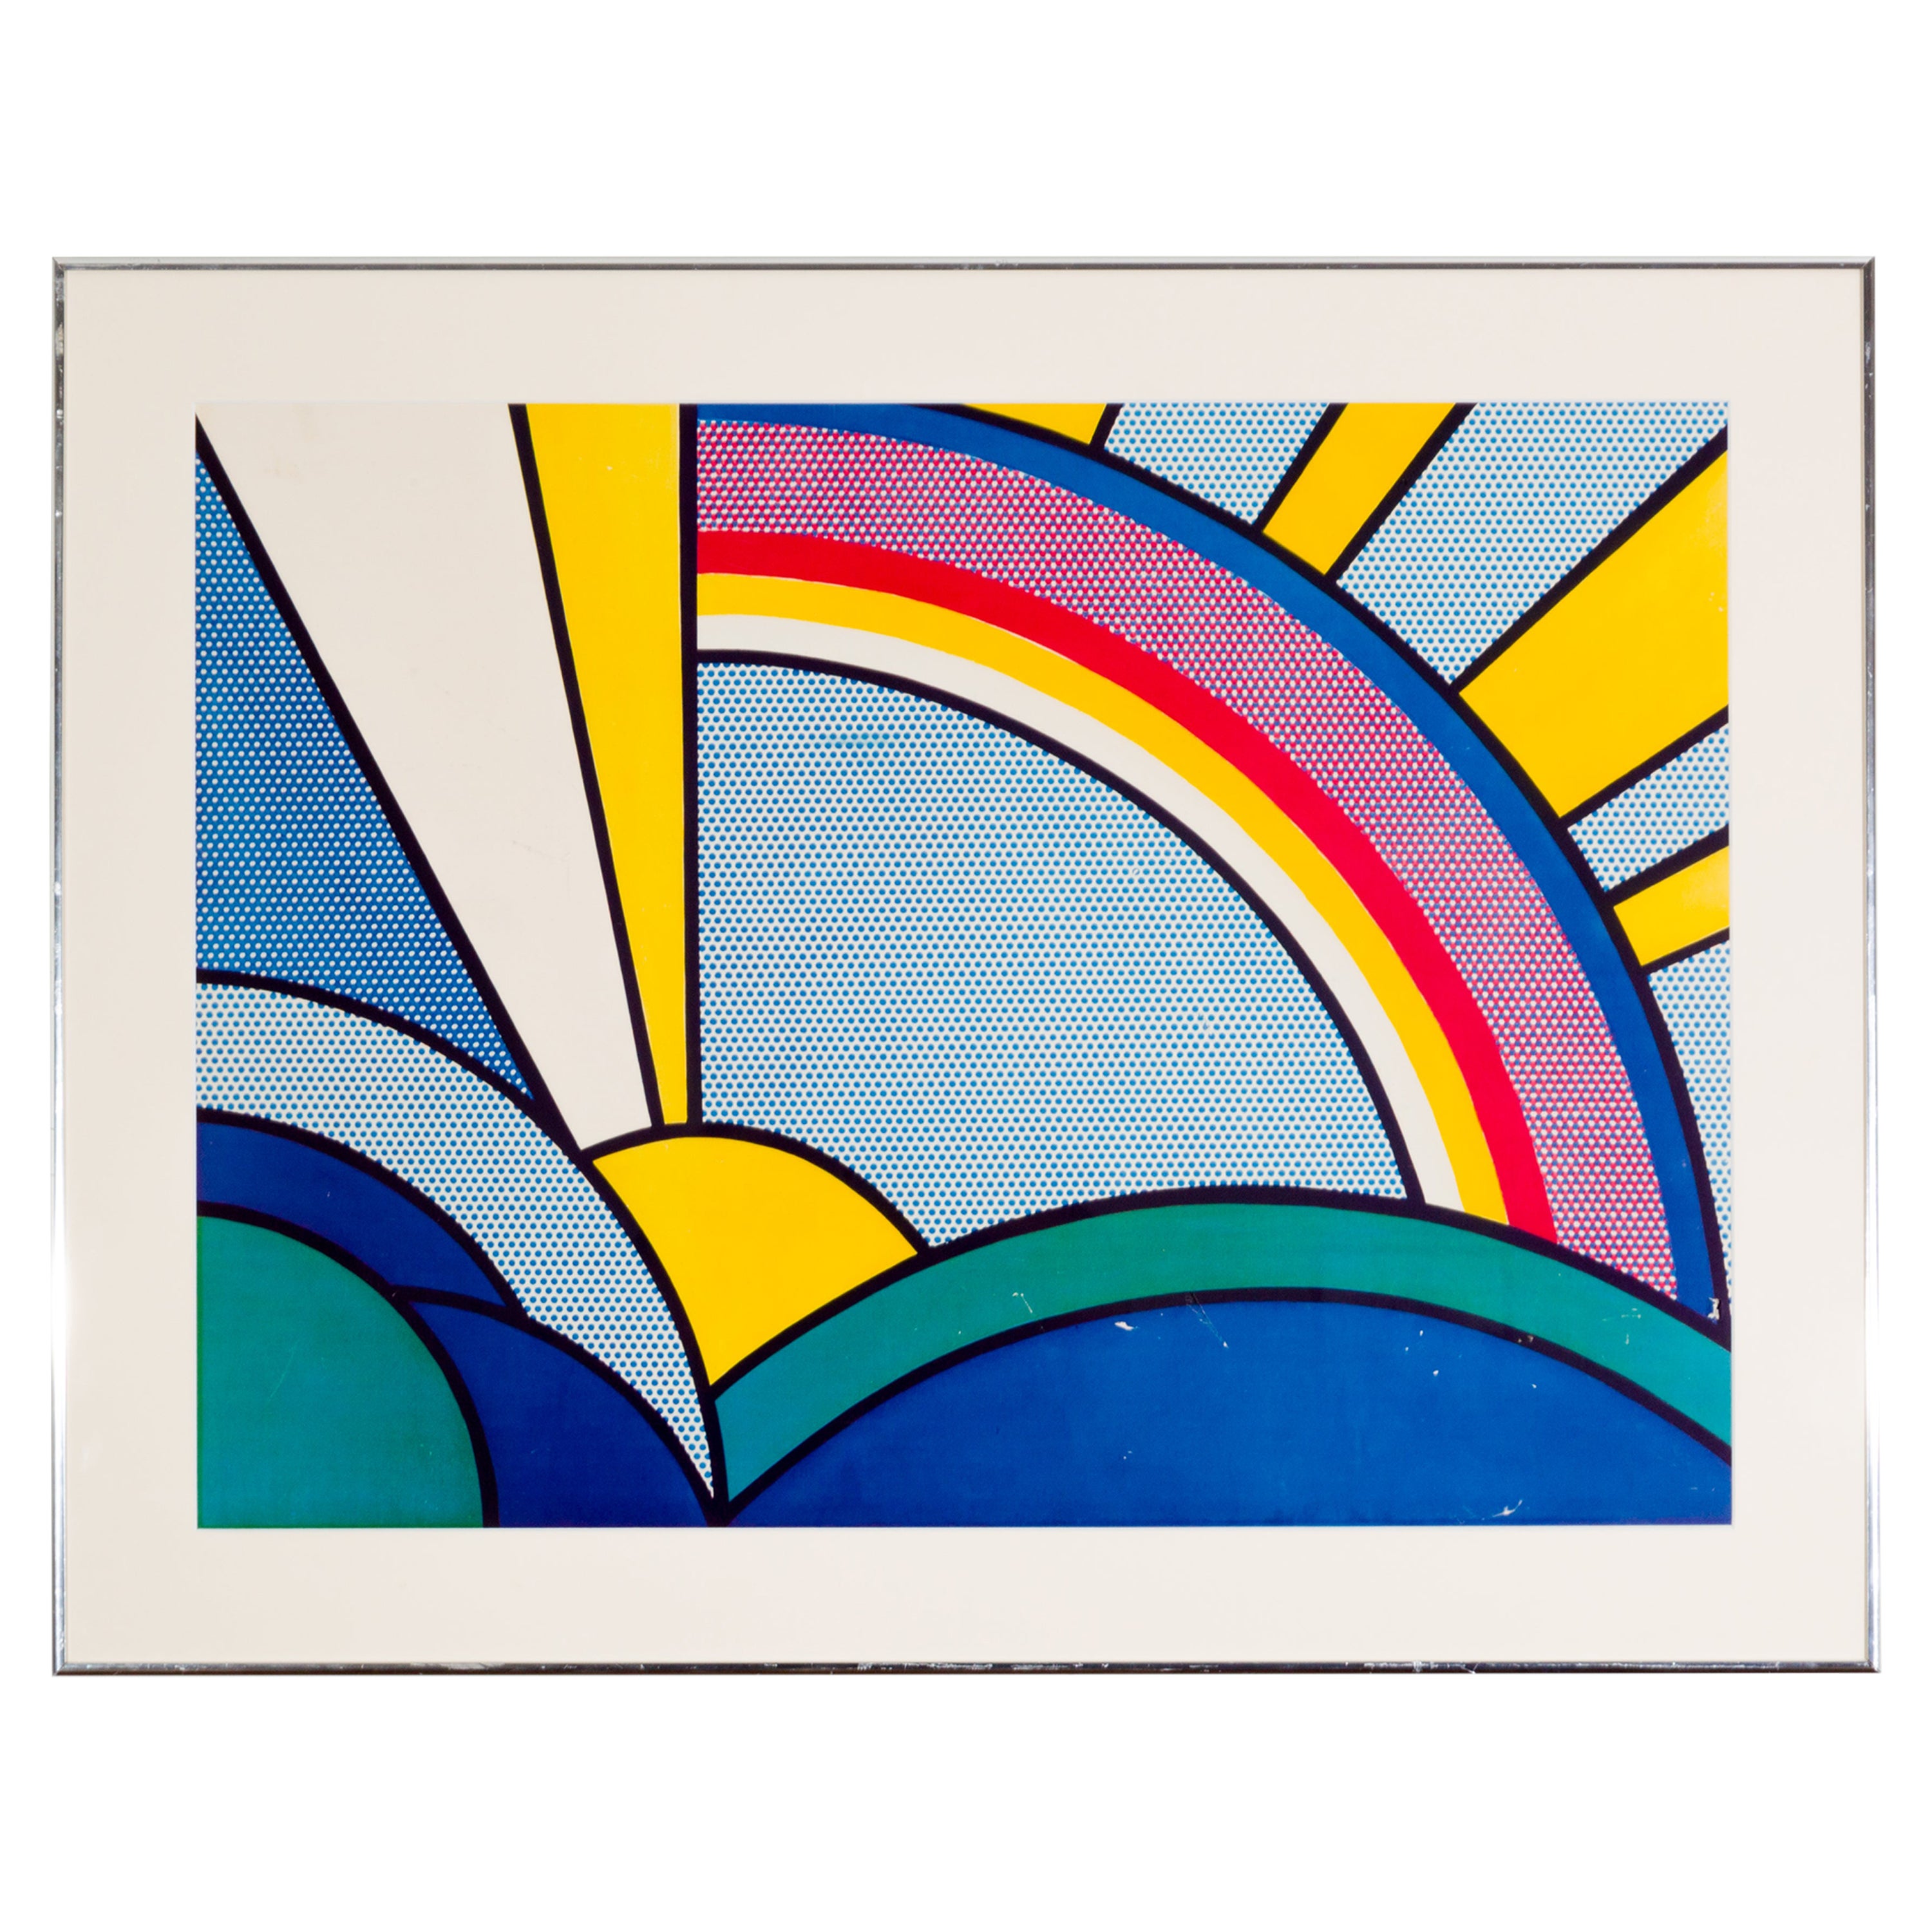  The Modernity Painting of Sun Rays" (peinture moderne de rayons de soleil)  Sérigraphie d'après Roy Lichtenstein 1972